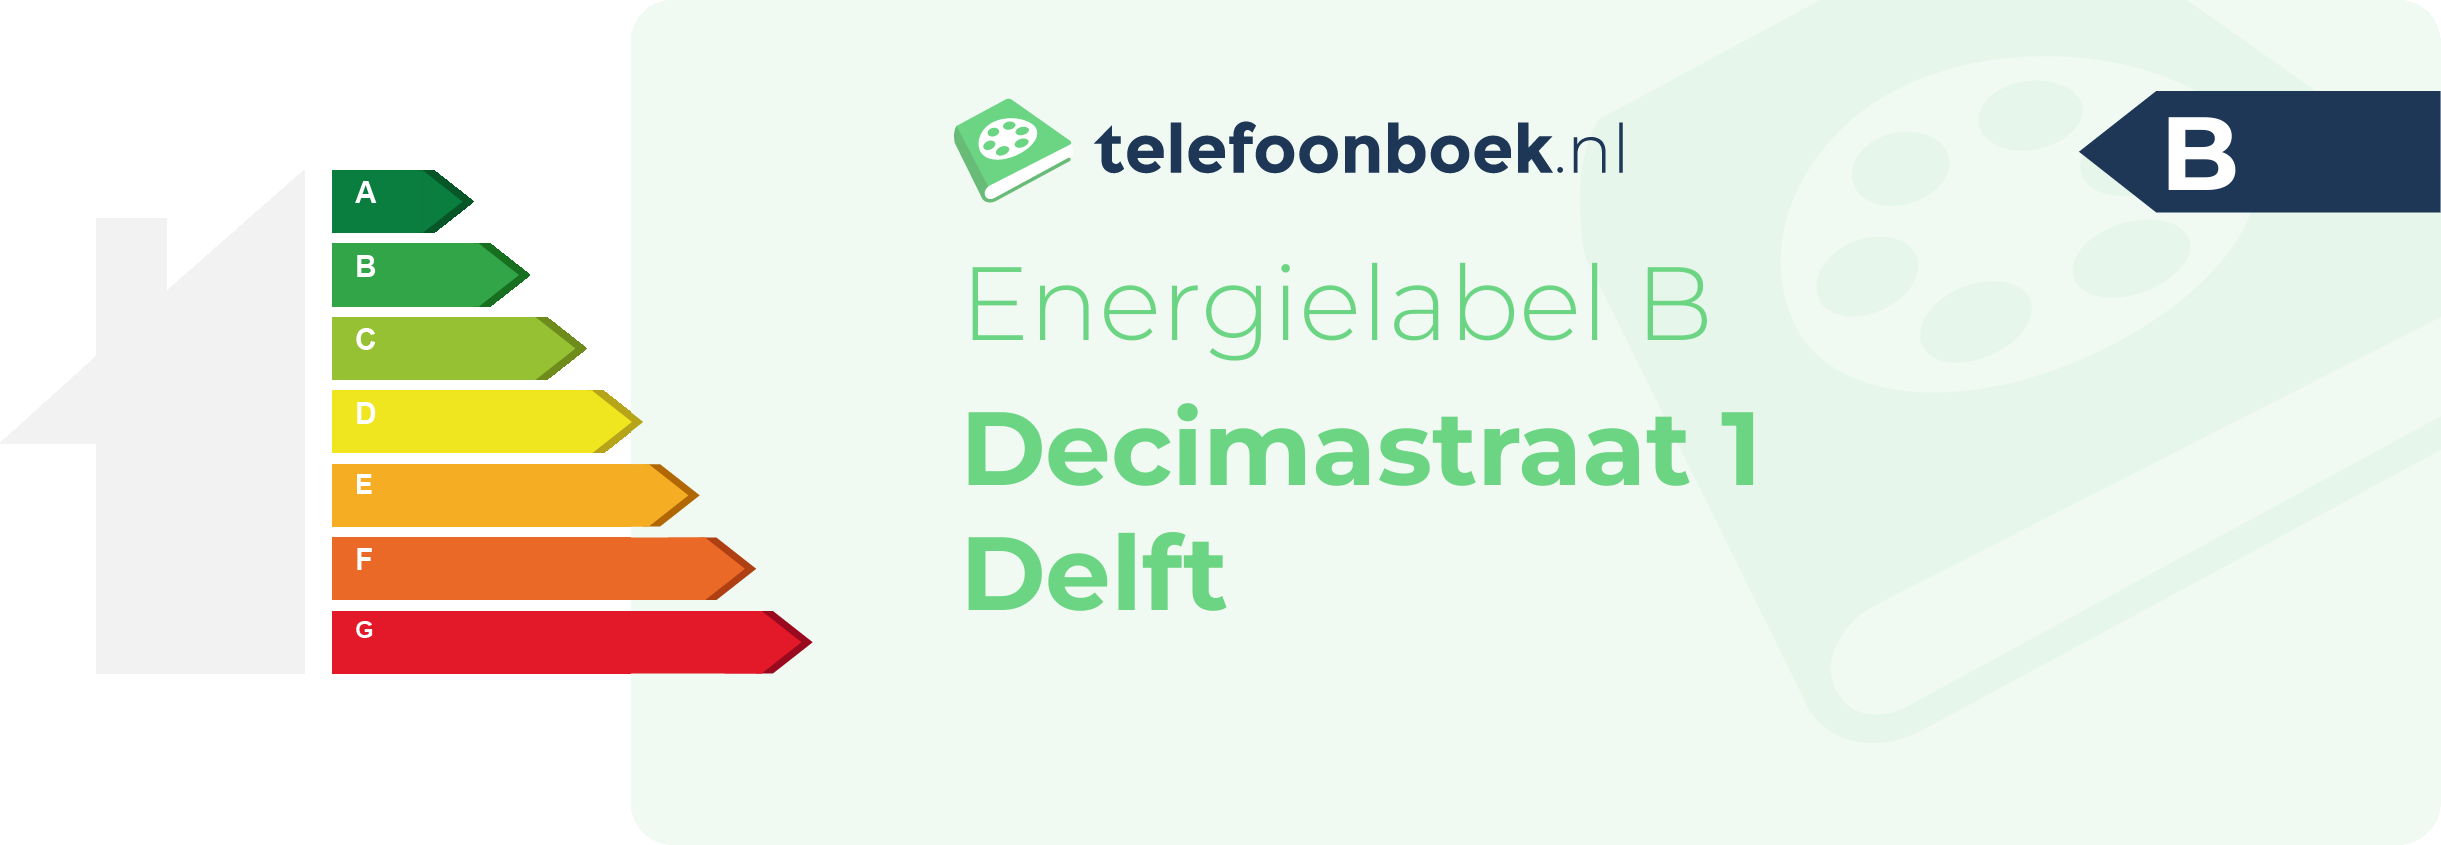 Energielabel Decimastraat 1 Delft